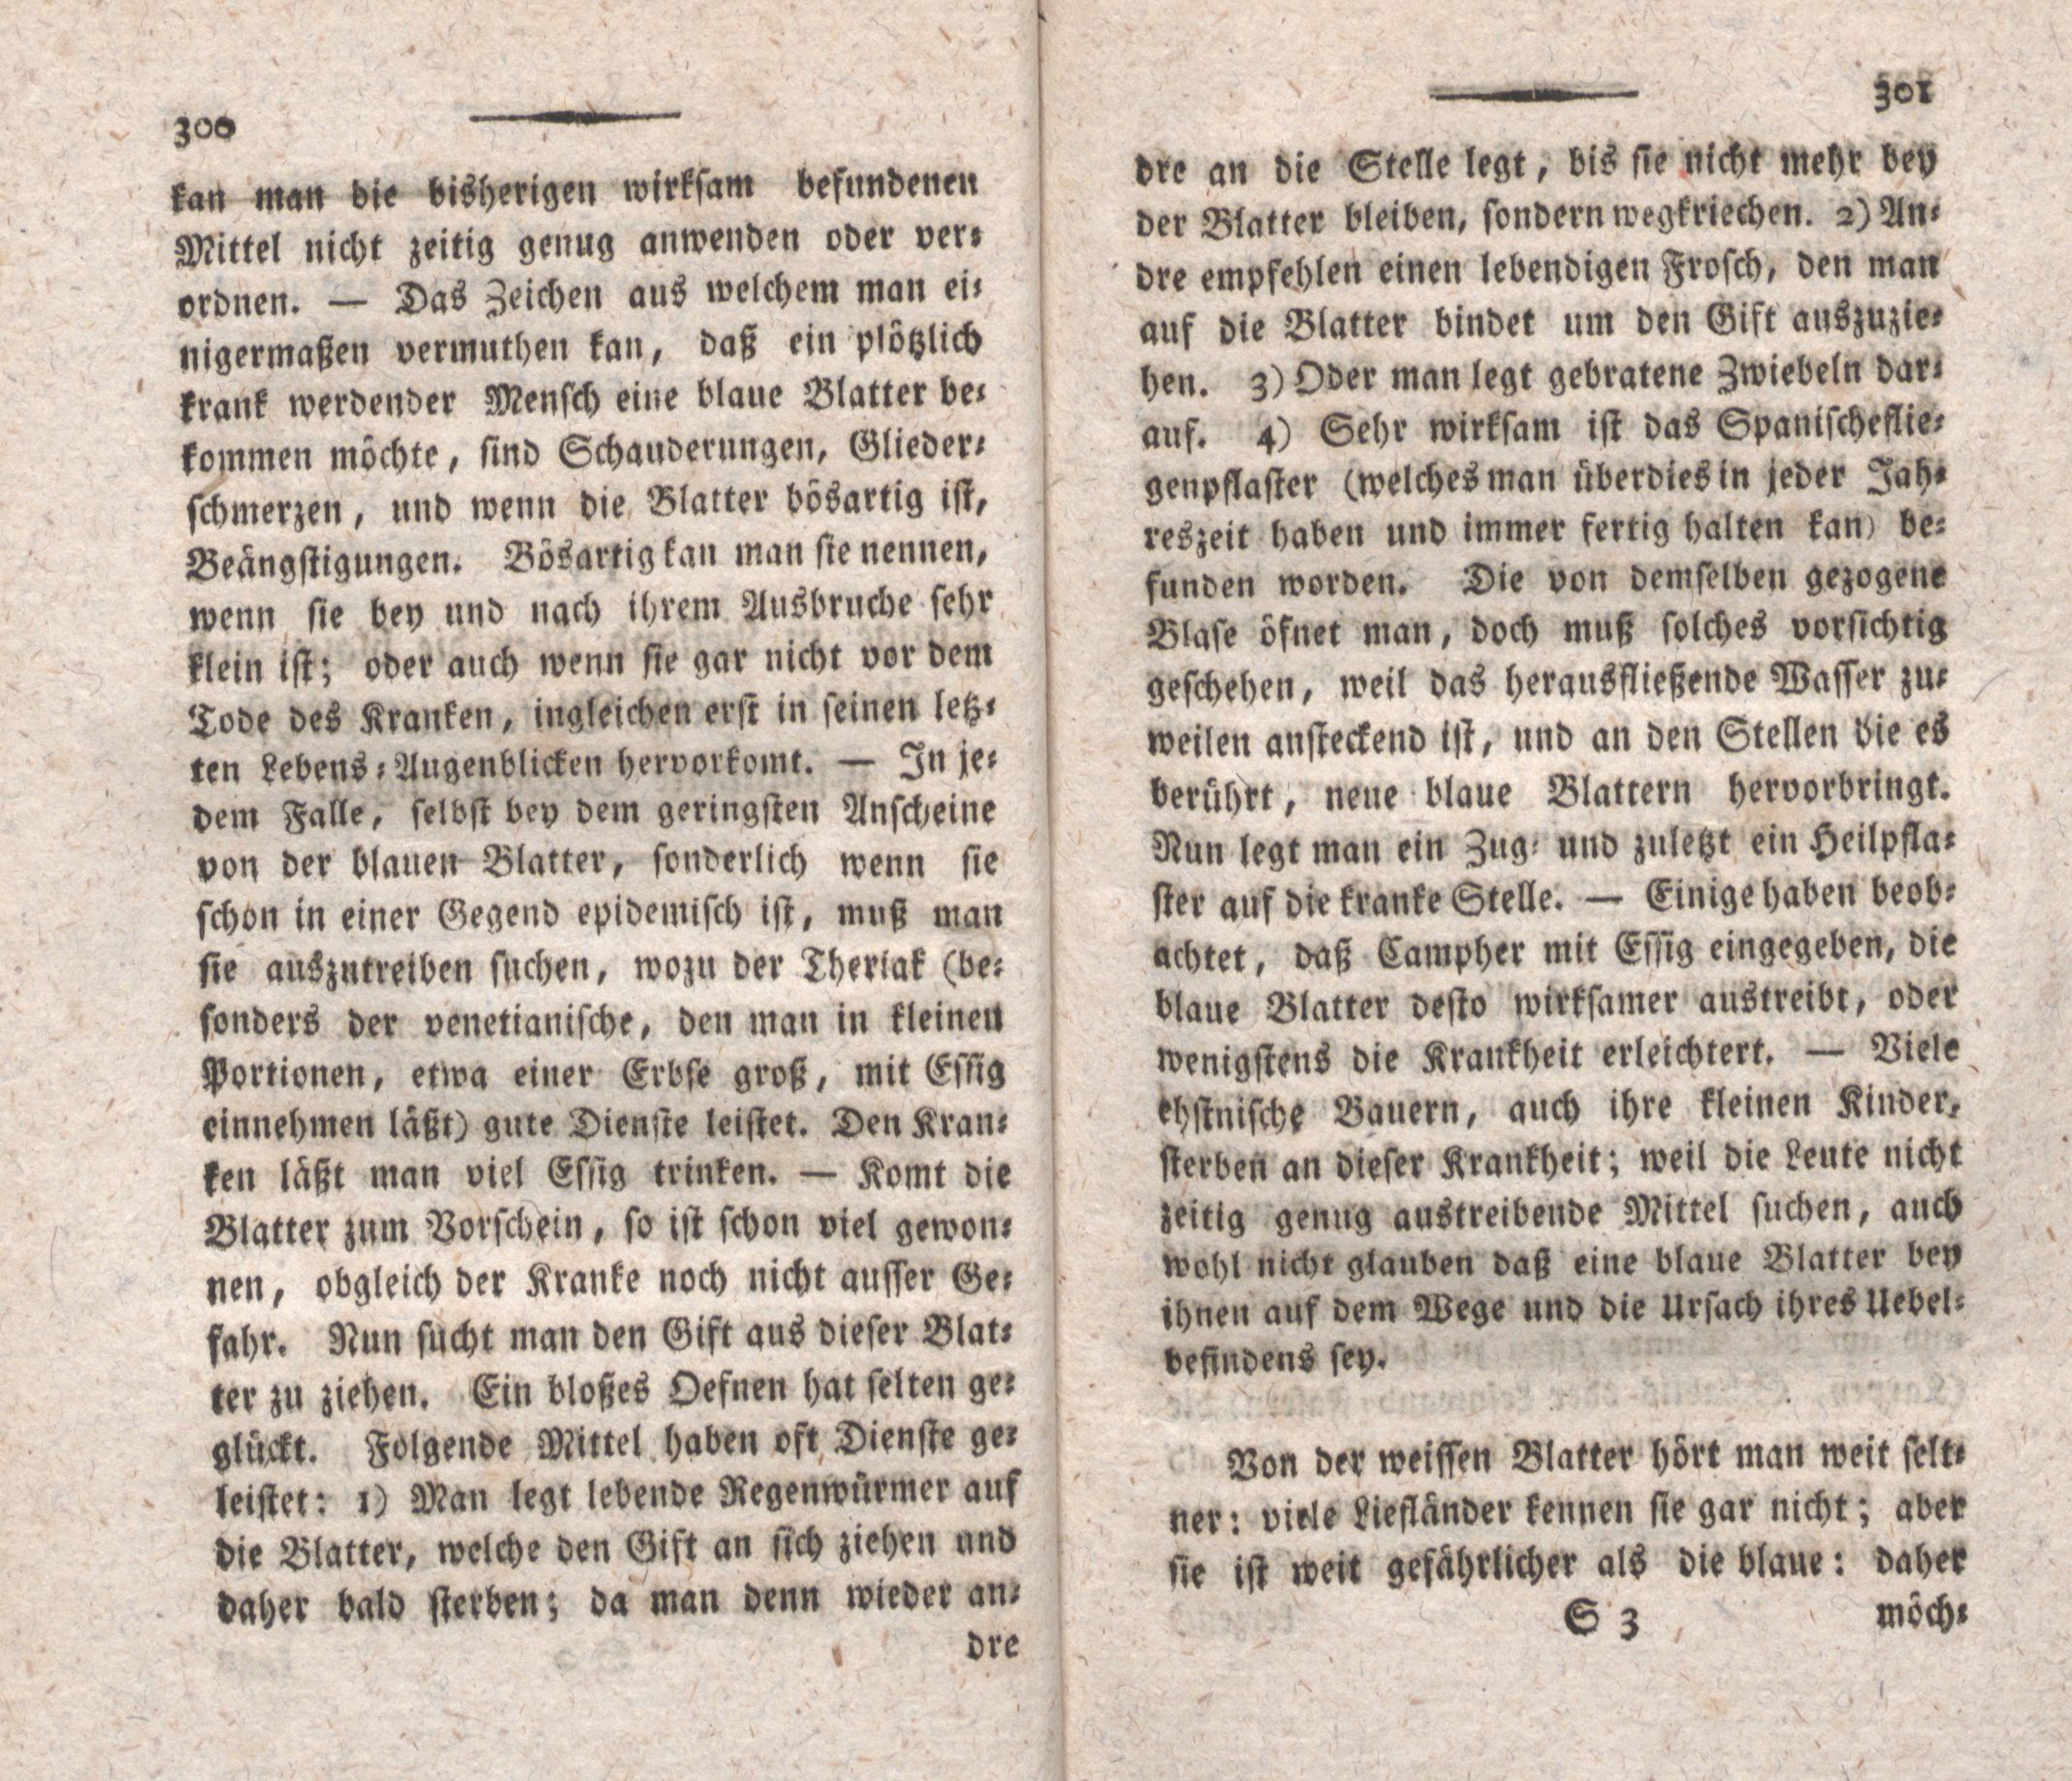 Einige in Liefland über die blaue- und über die weisse Blatter neuerlichst gesammelte Beobachtungen (1798) | 2. (300-301) Main body of text